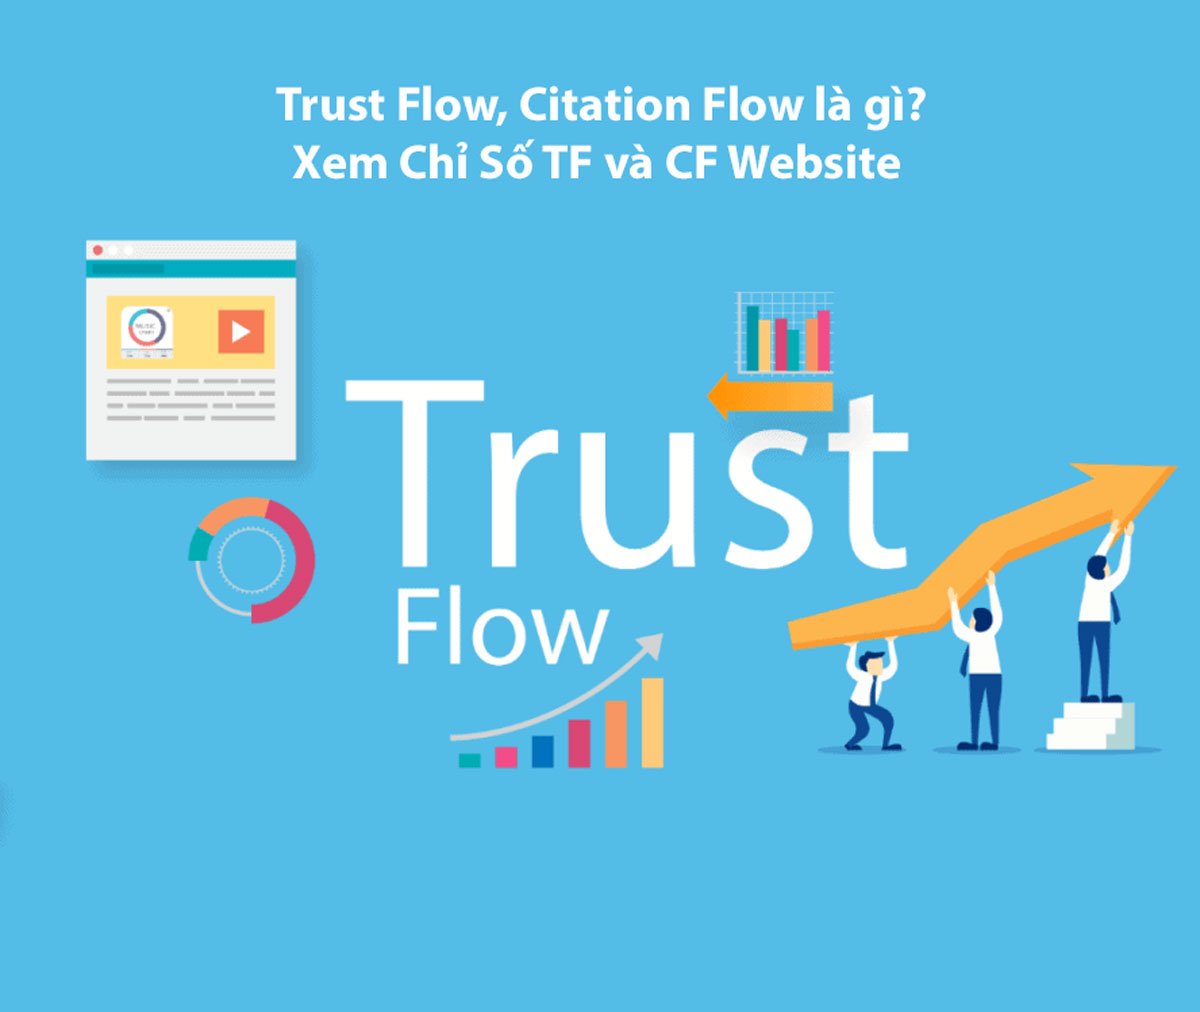 Trust Flow, Citation Flow là gì? - Chỉ số đánh giá sức mạnh website